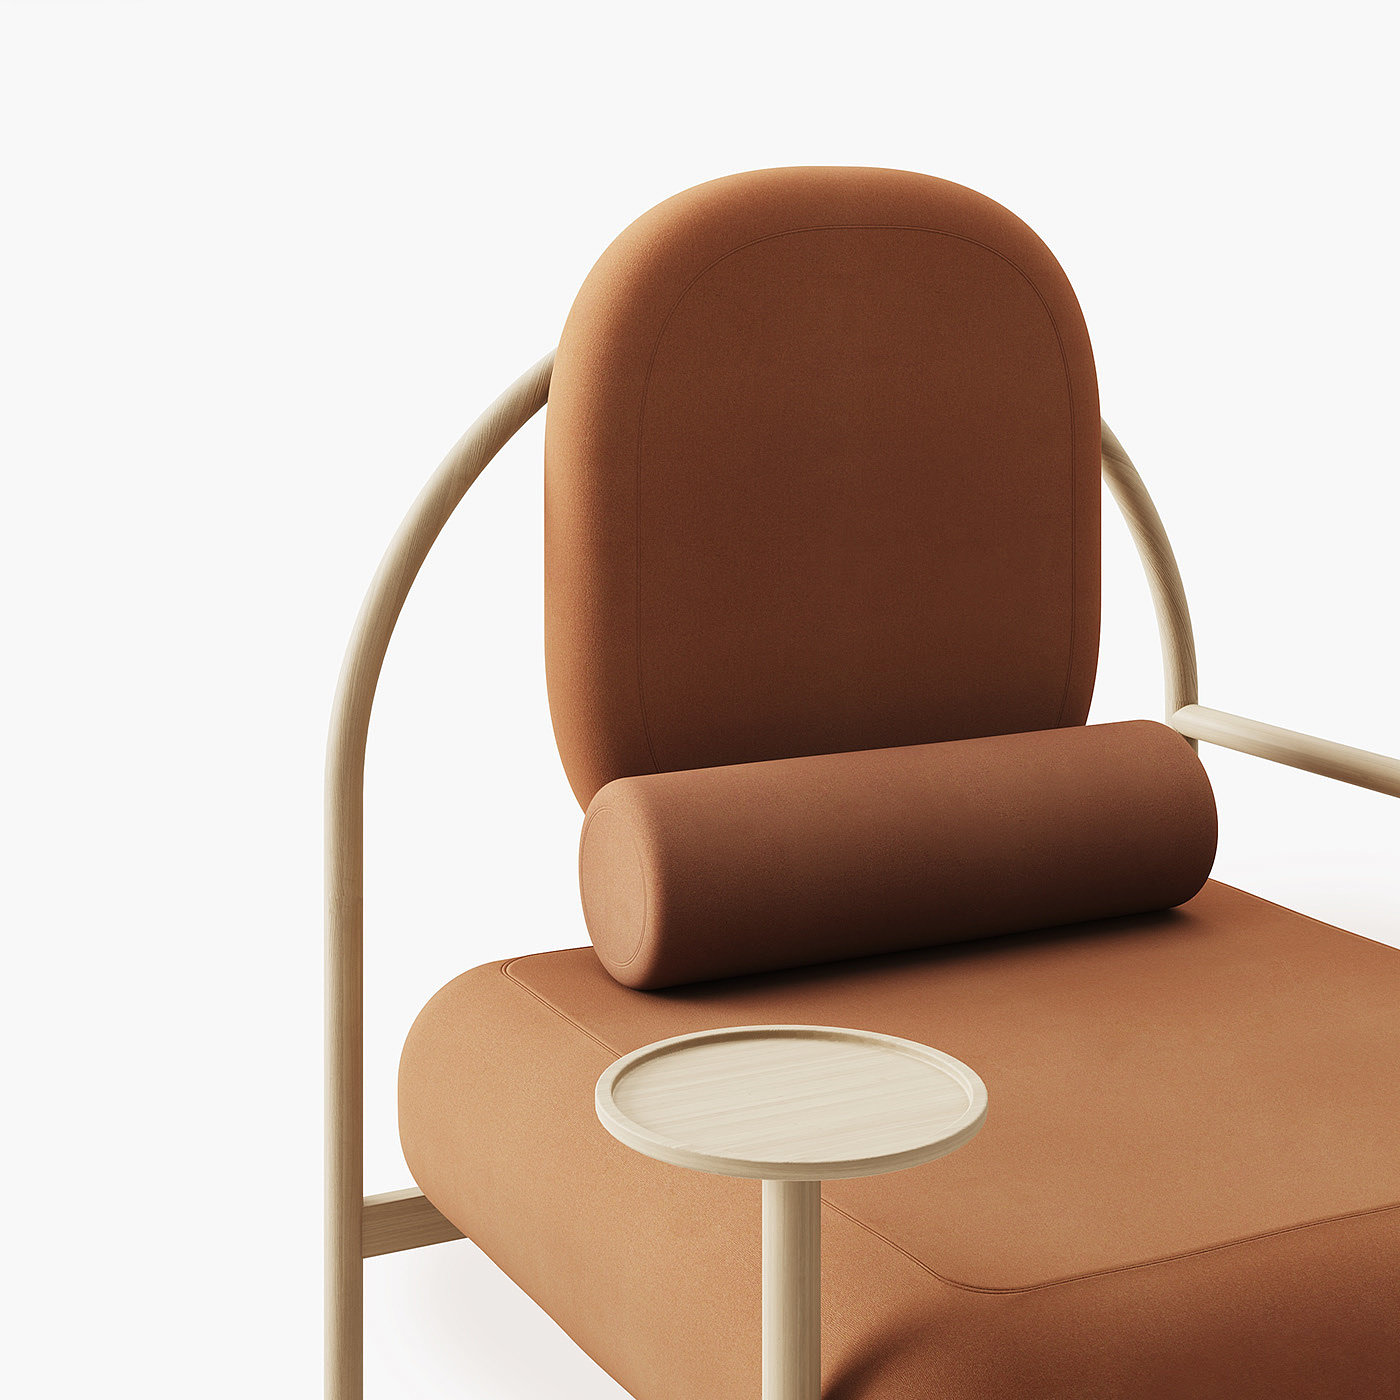 椅子，仿生，舒适，木制，